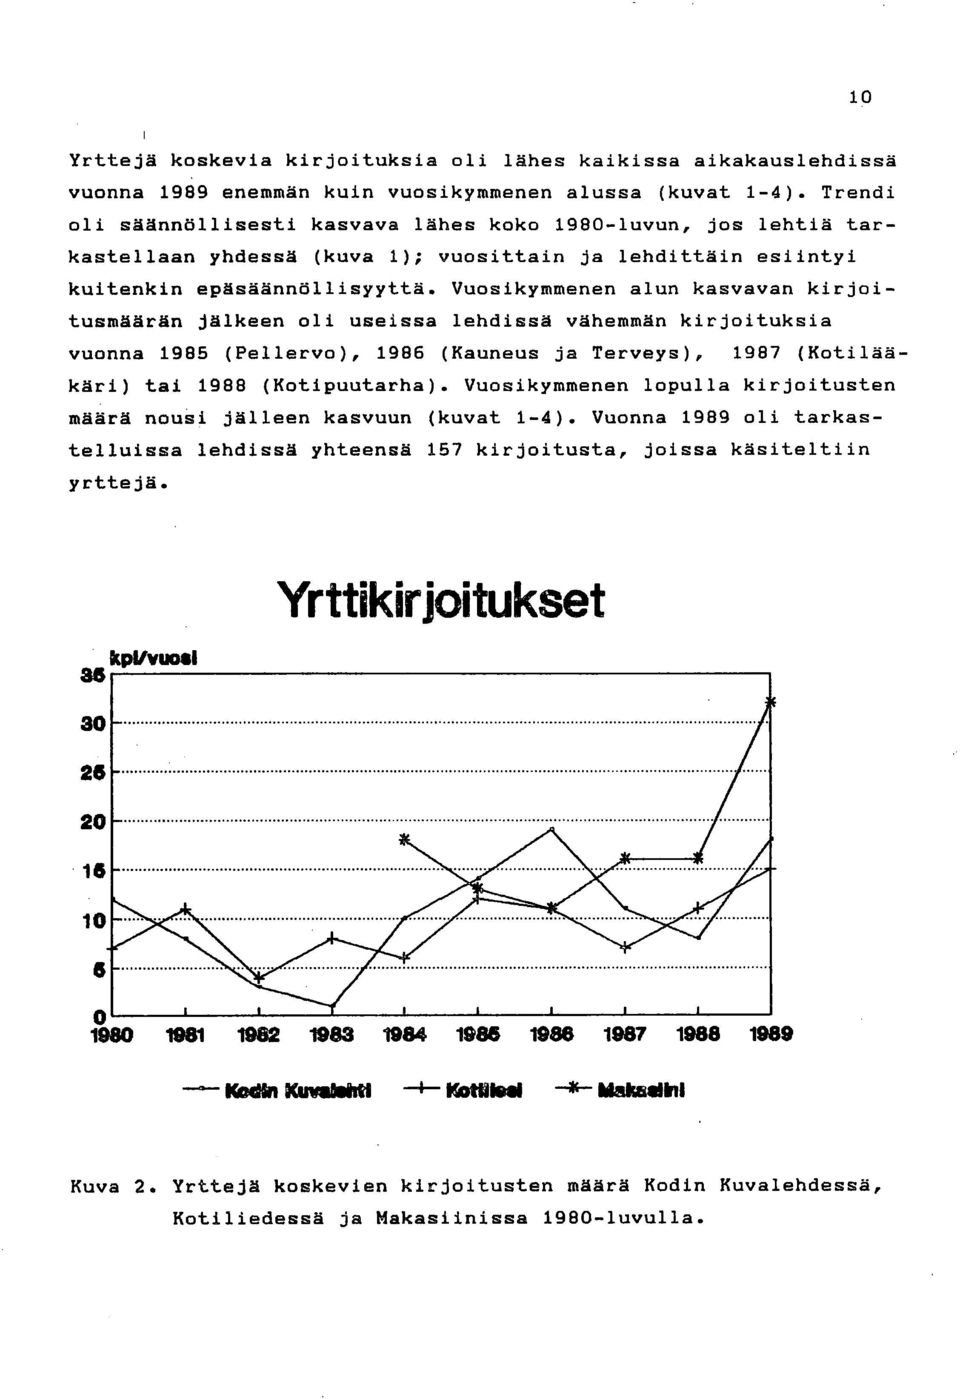 Vuosikymmenen alun kasvavan kirjoitusmäärän jälkeen oli useissa lehdissä vähemmän kirjoituksia vuonna 1985 (Pellervo), 1986 (Kauneus ja Terveys), 1987 (Kotilääkäri) tai 1988 (Kotipuutarha).